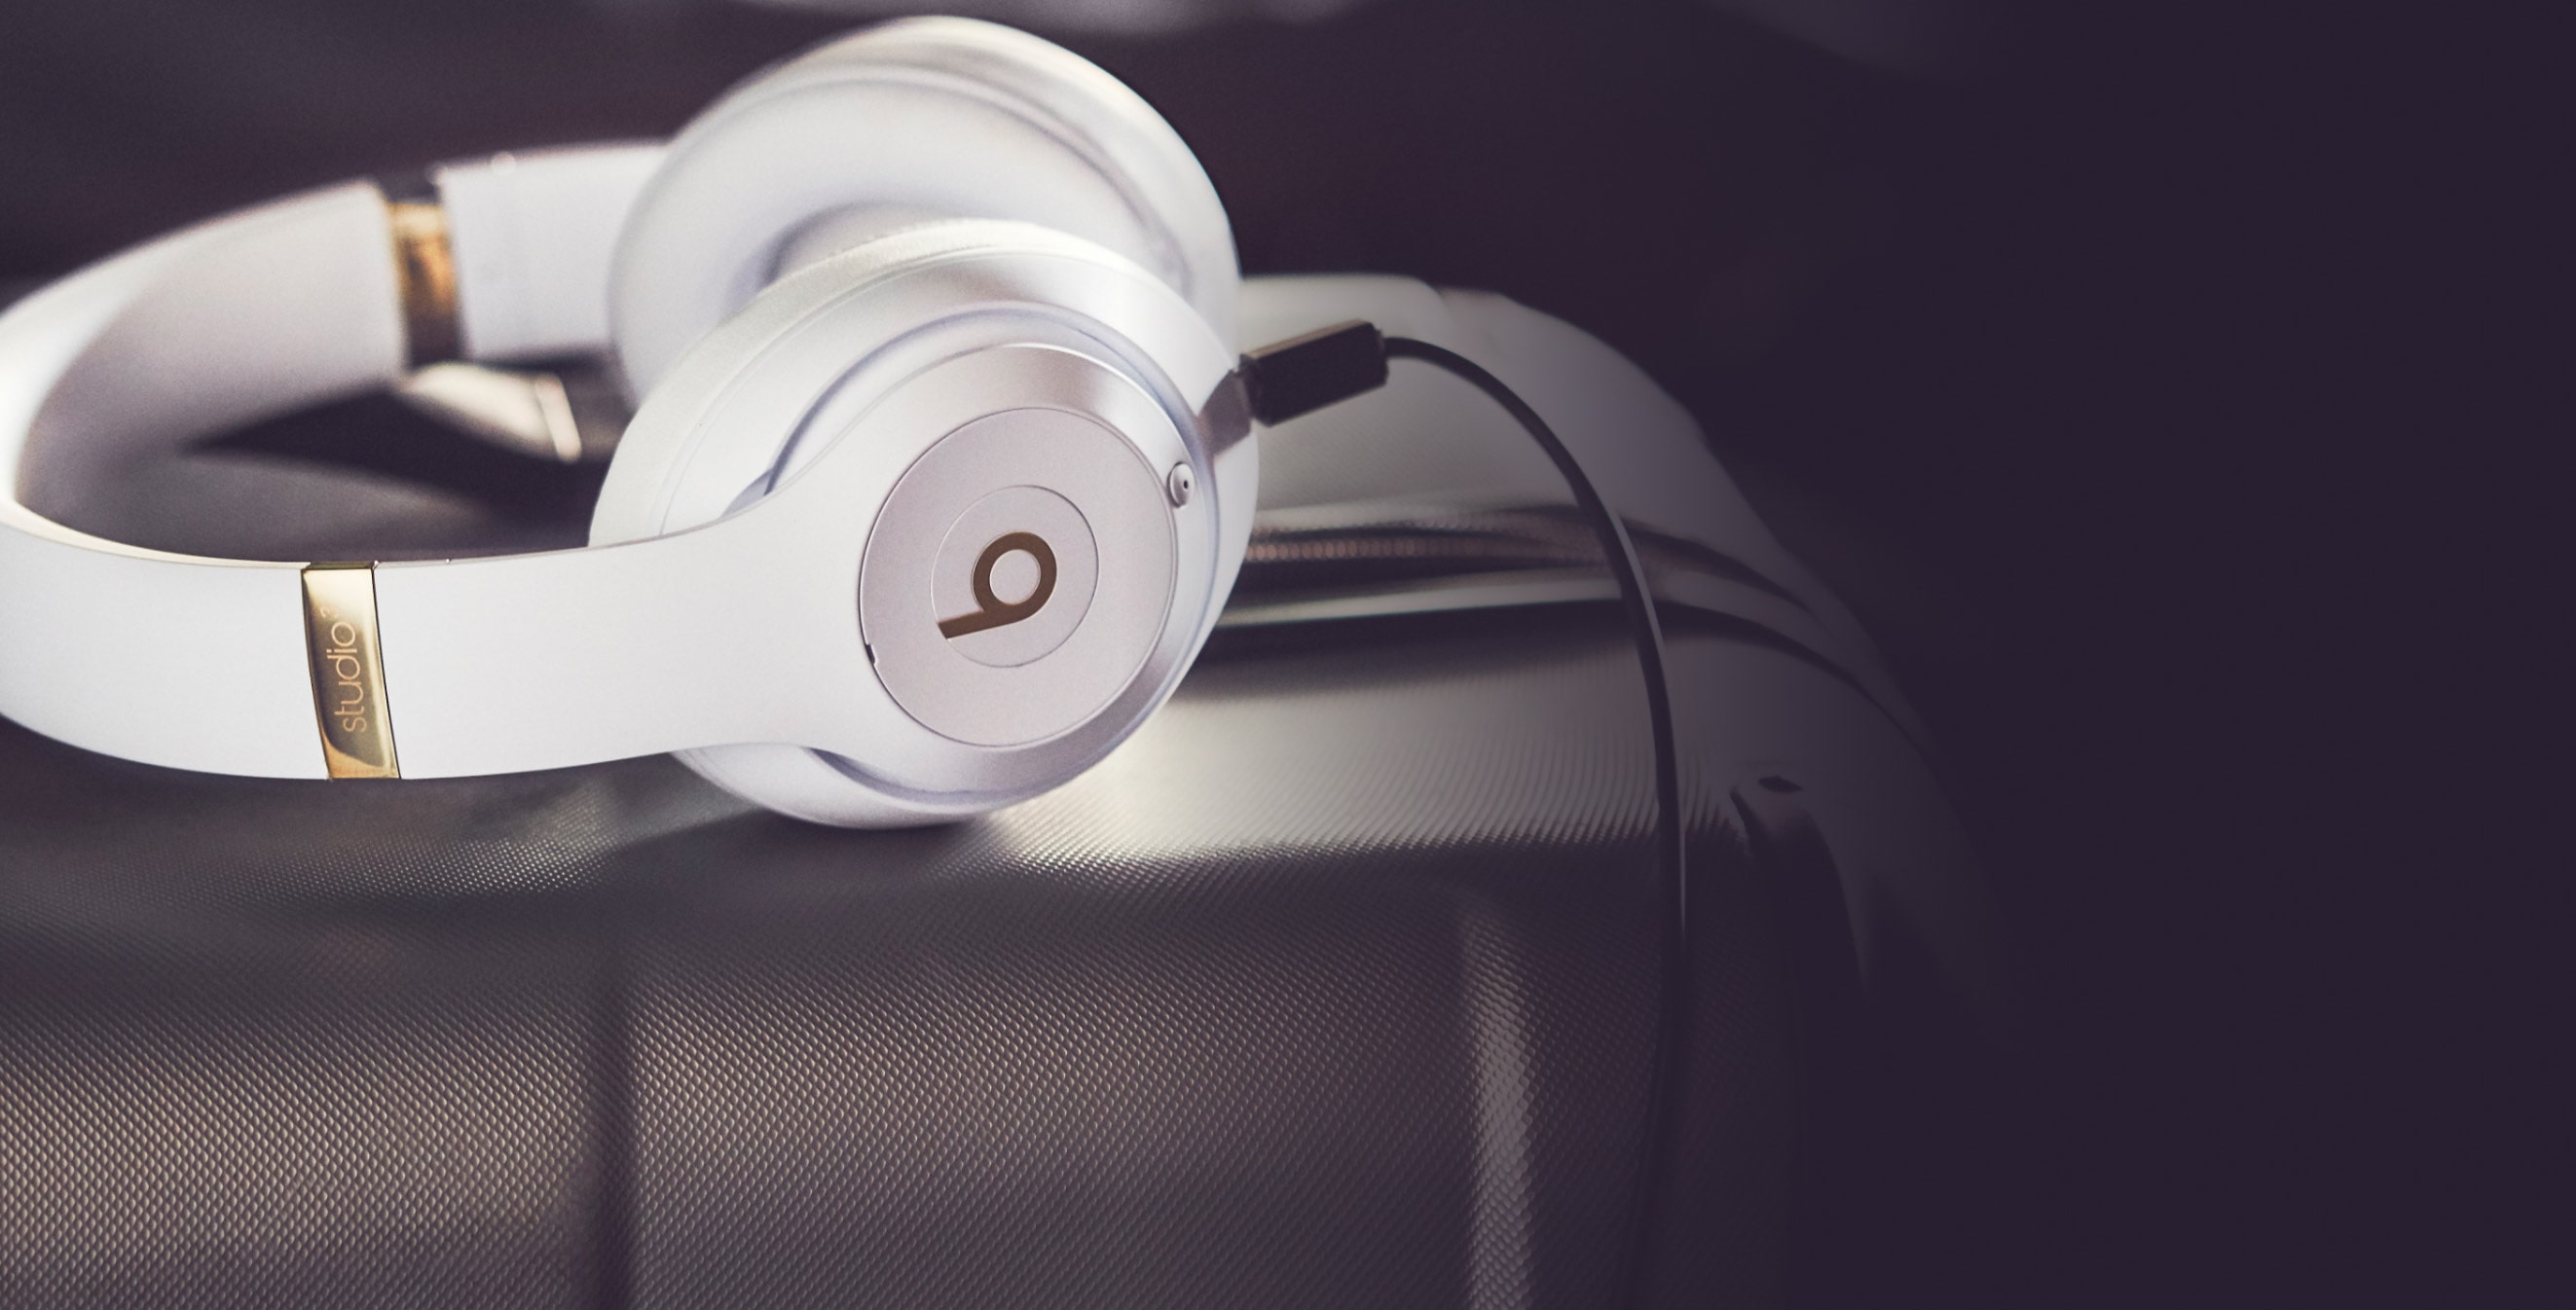 オーディオ機器 ヘッドフォン Studio³ Wireless | Premium Noise Cancelling Over-Ear Headphones 